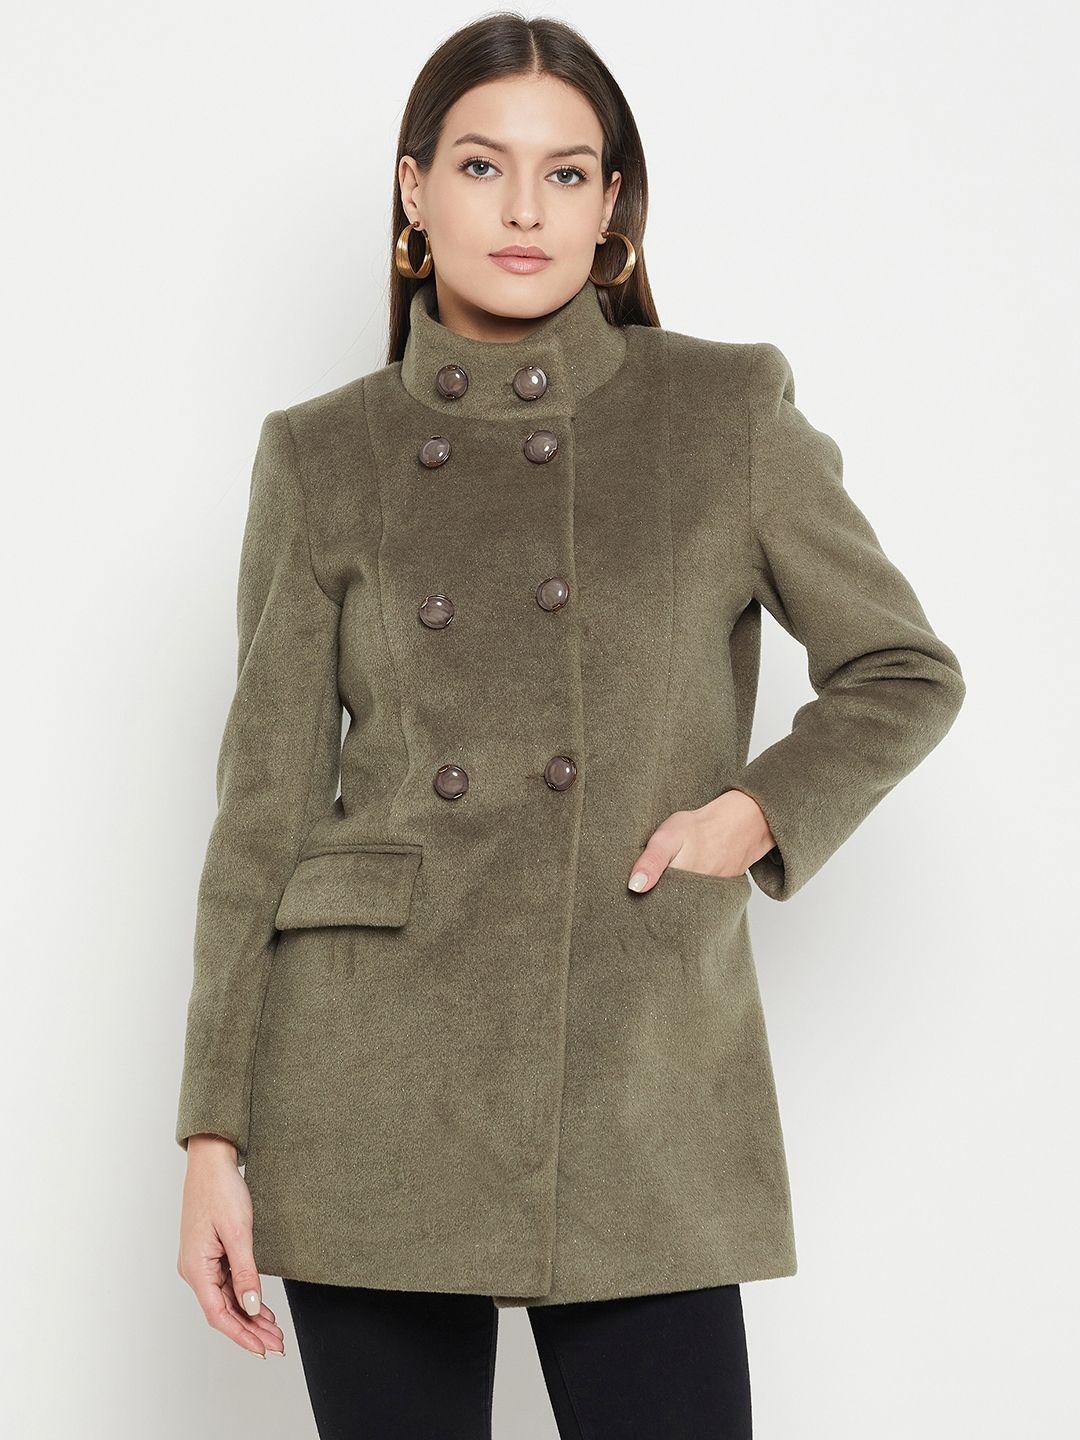 duke-mandarin-collar-woolen-overcoat